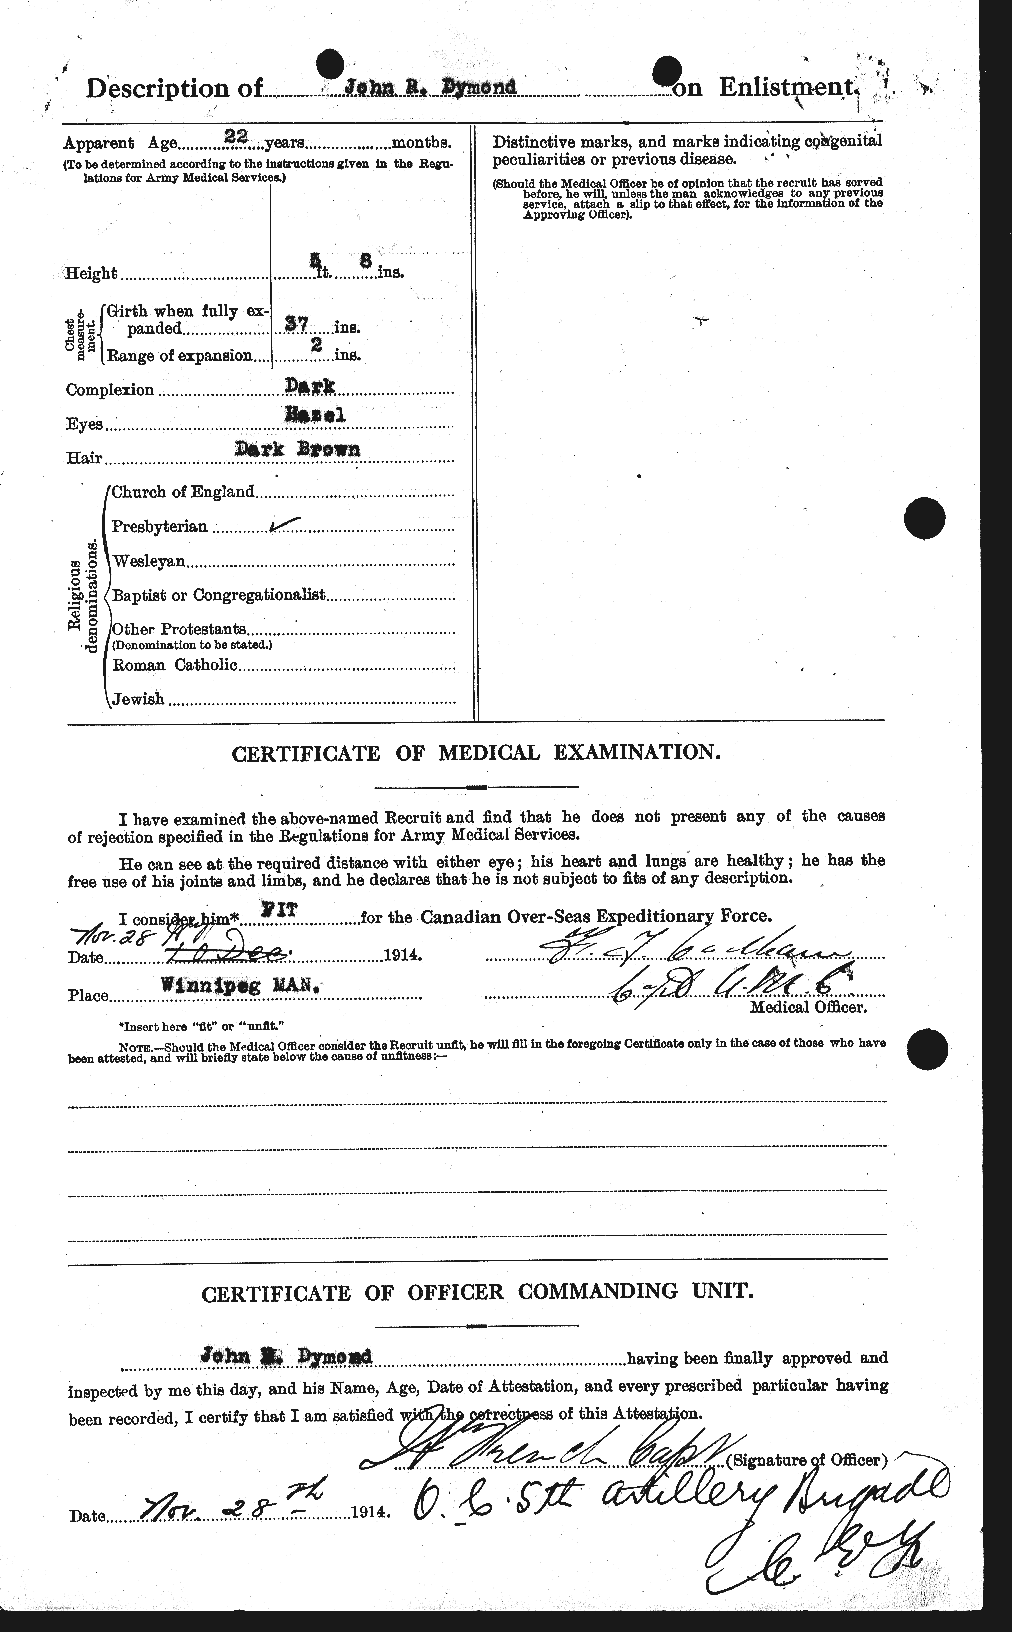 Dossiers du Personnel de la Première Guerre mondiale - CEC 307321b